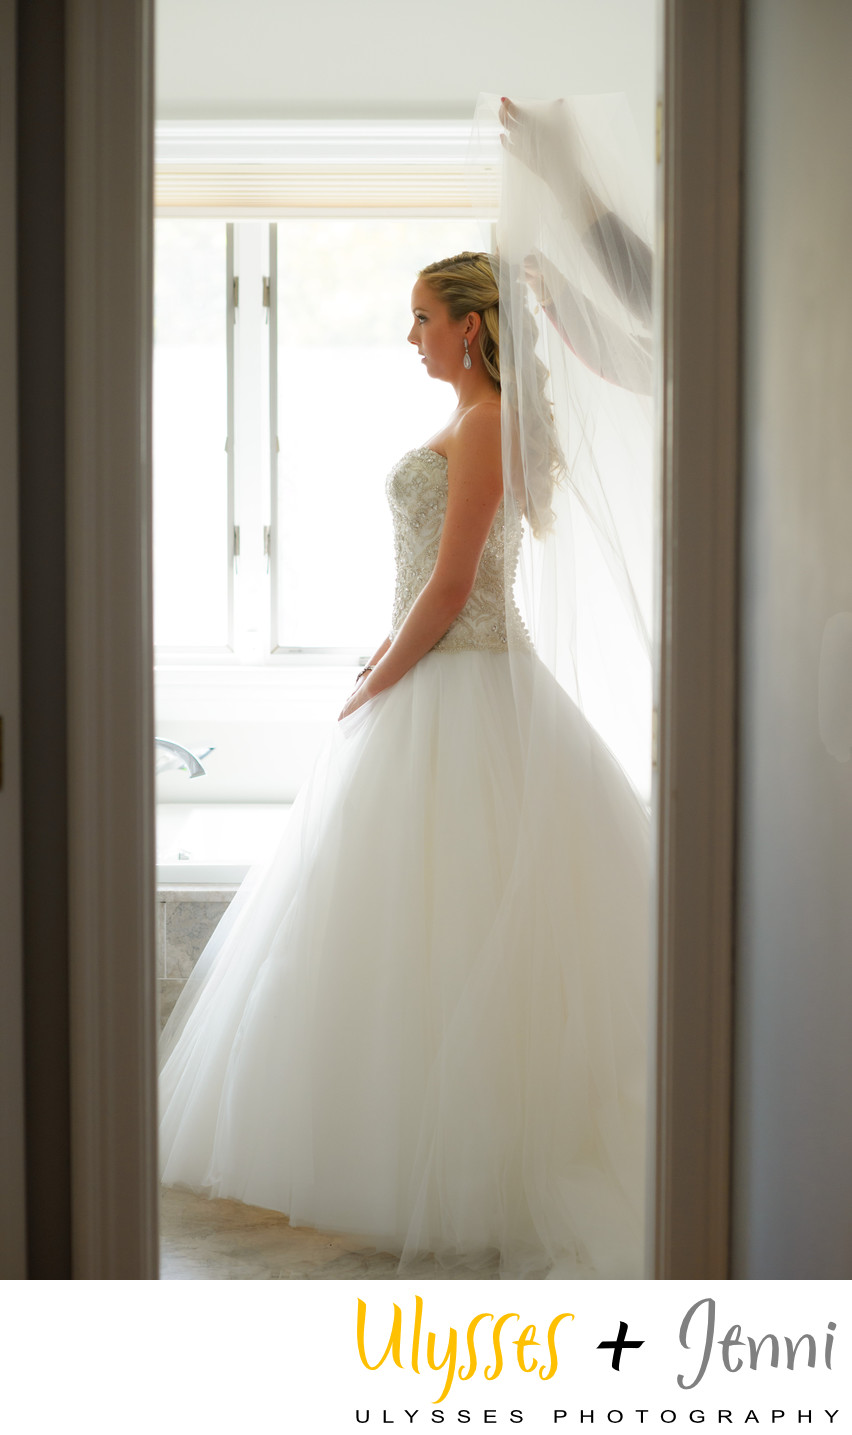 Bride Framed in Doorway